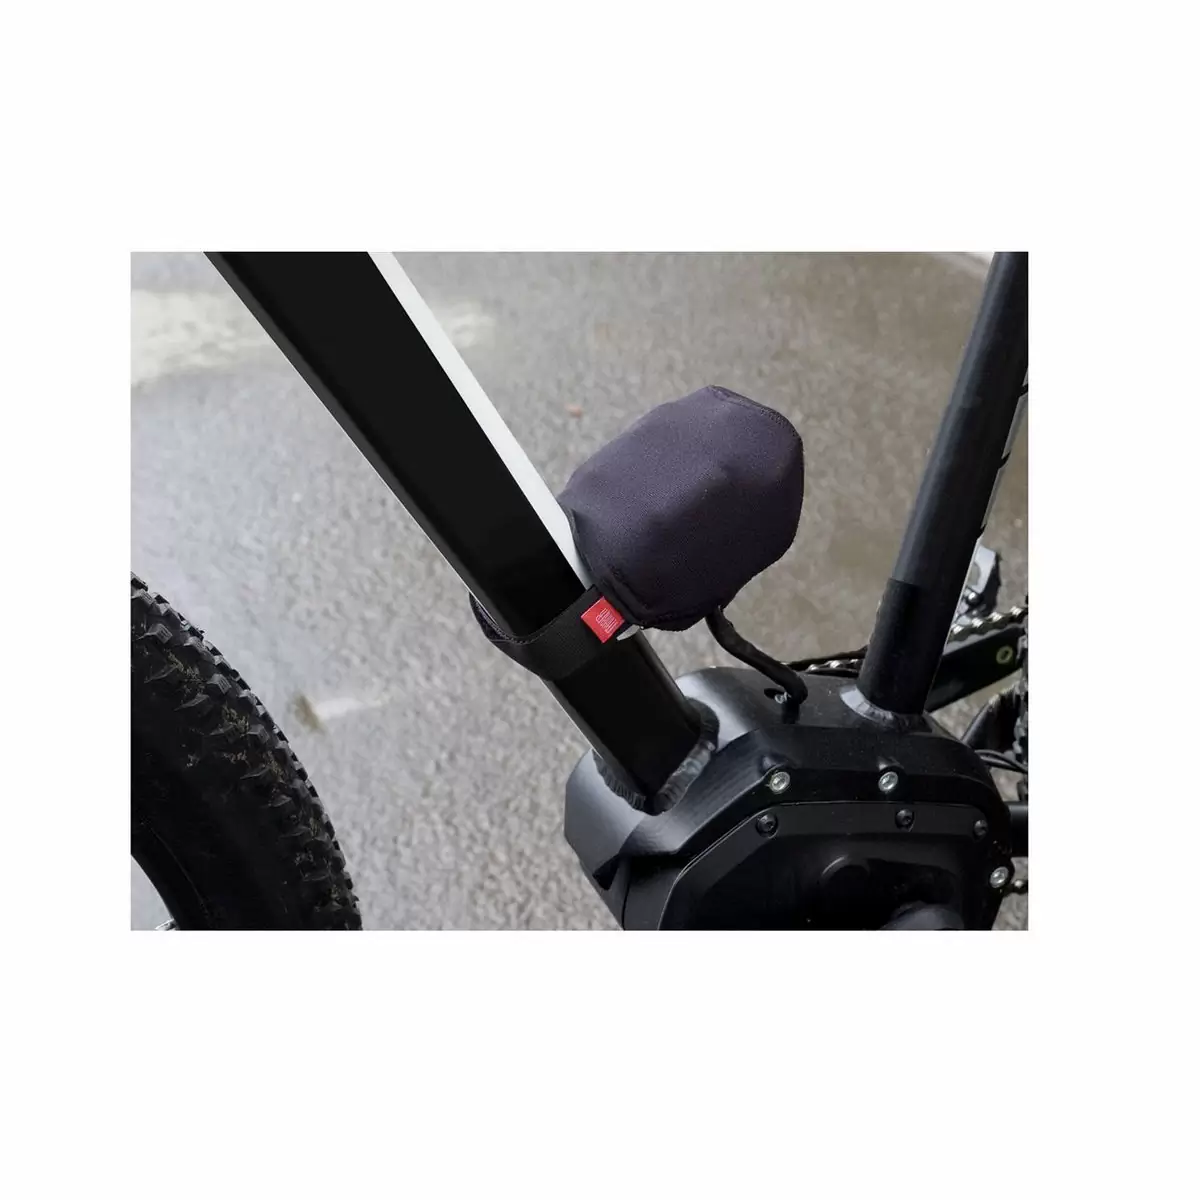 Capa protetora tampa elétrica montagem em quadro bateria tamanho L / Bosch Yamaha Shimano - image